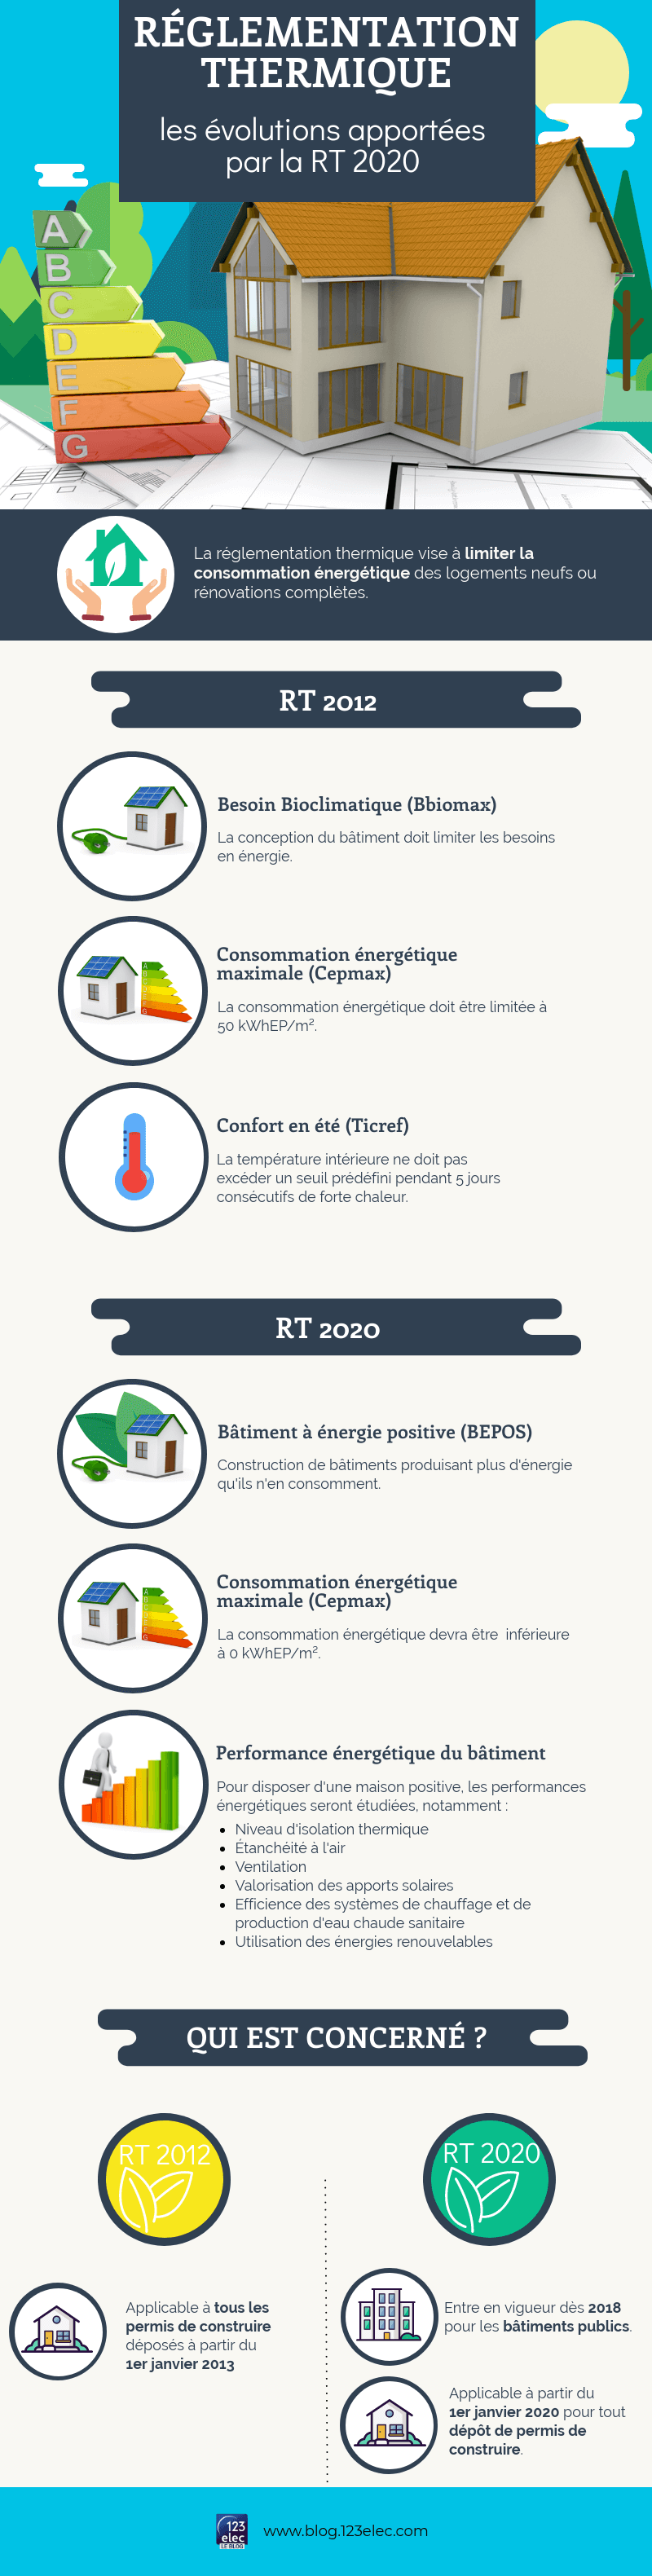 Infographie réglementation thermique, RT 2020